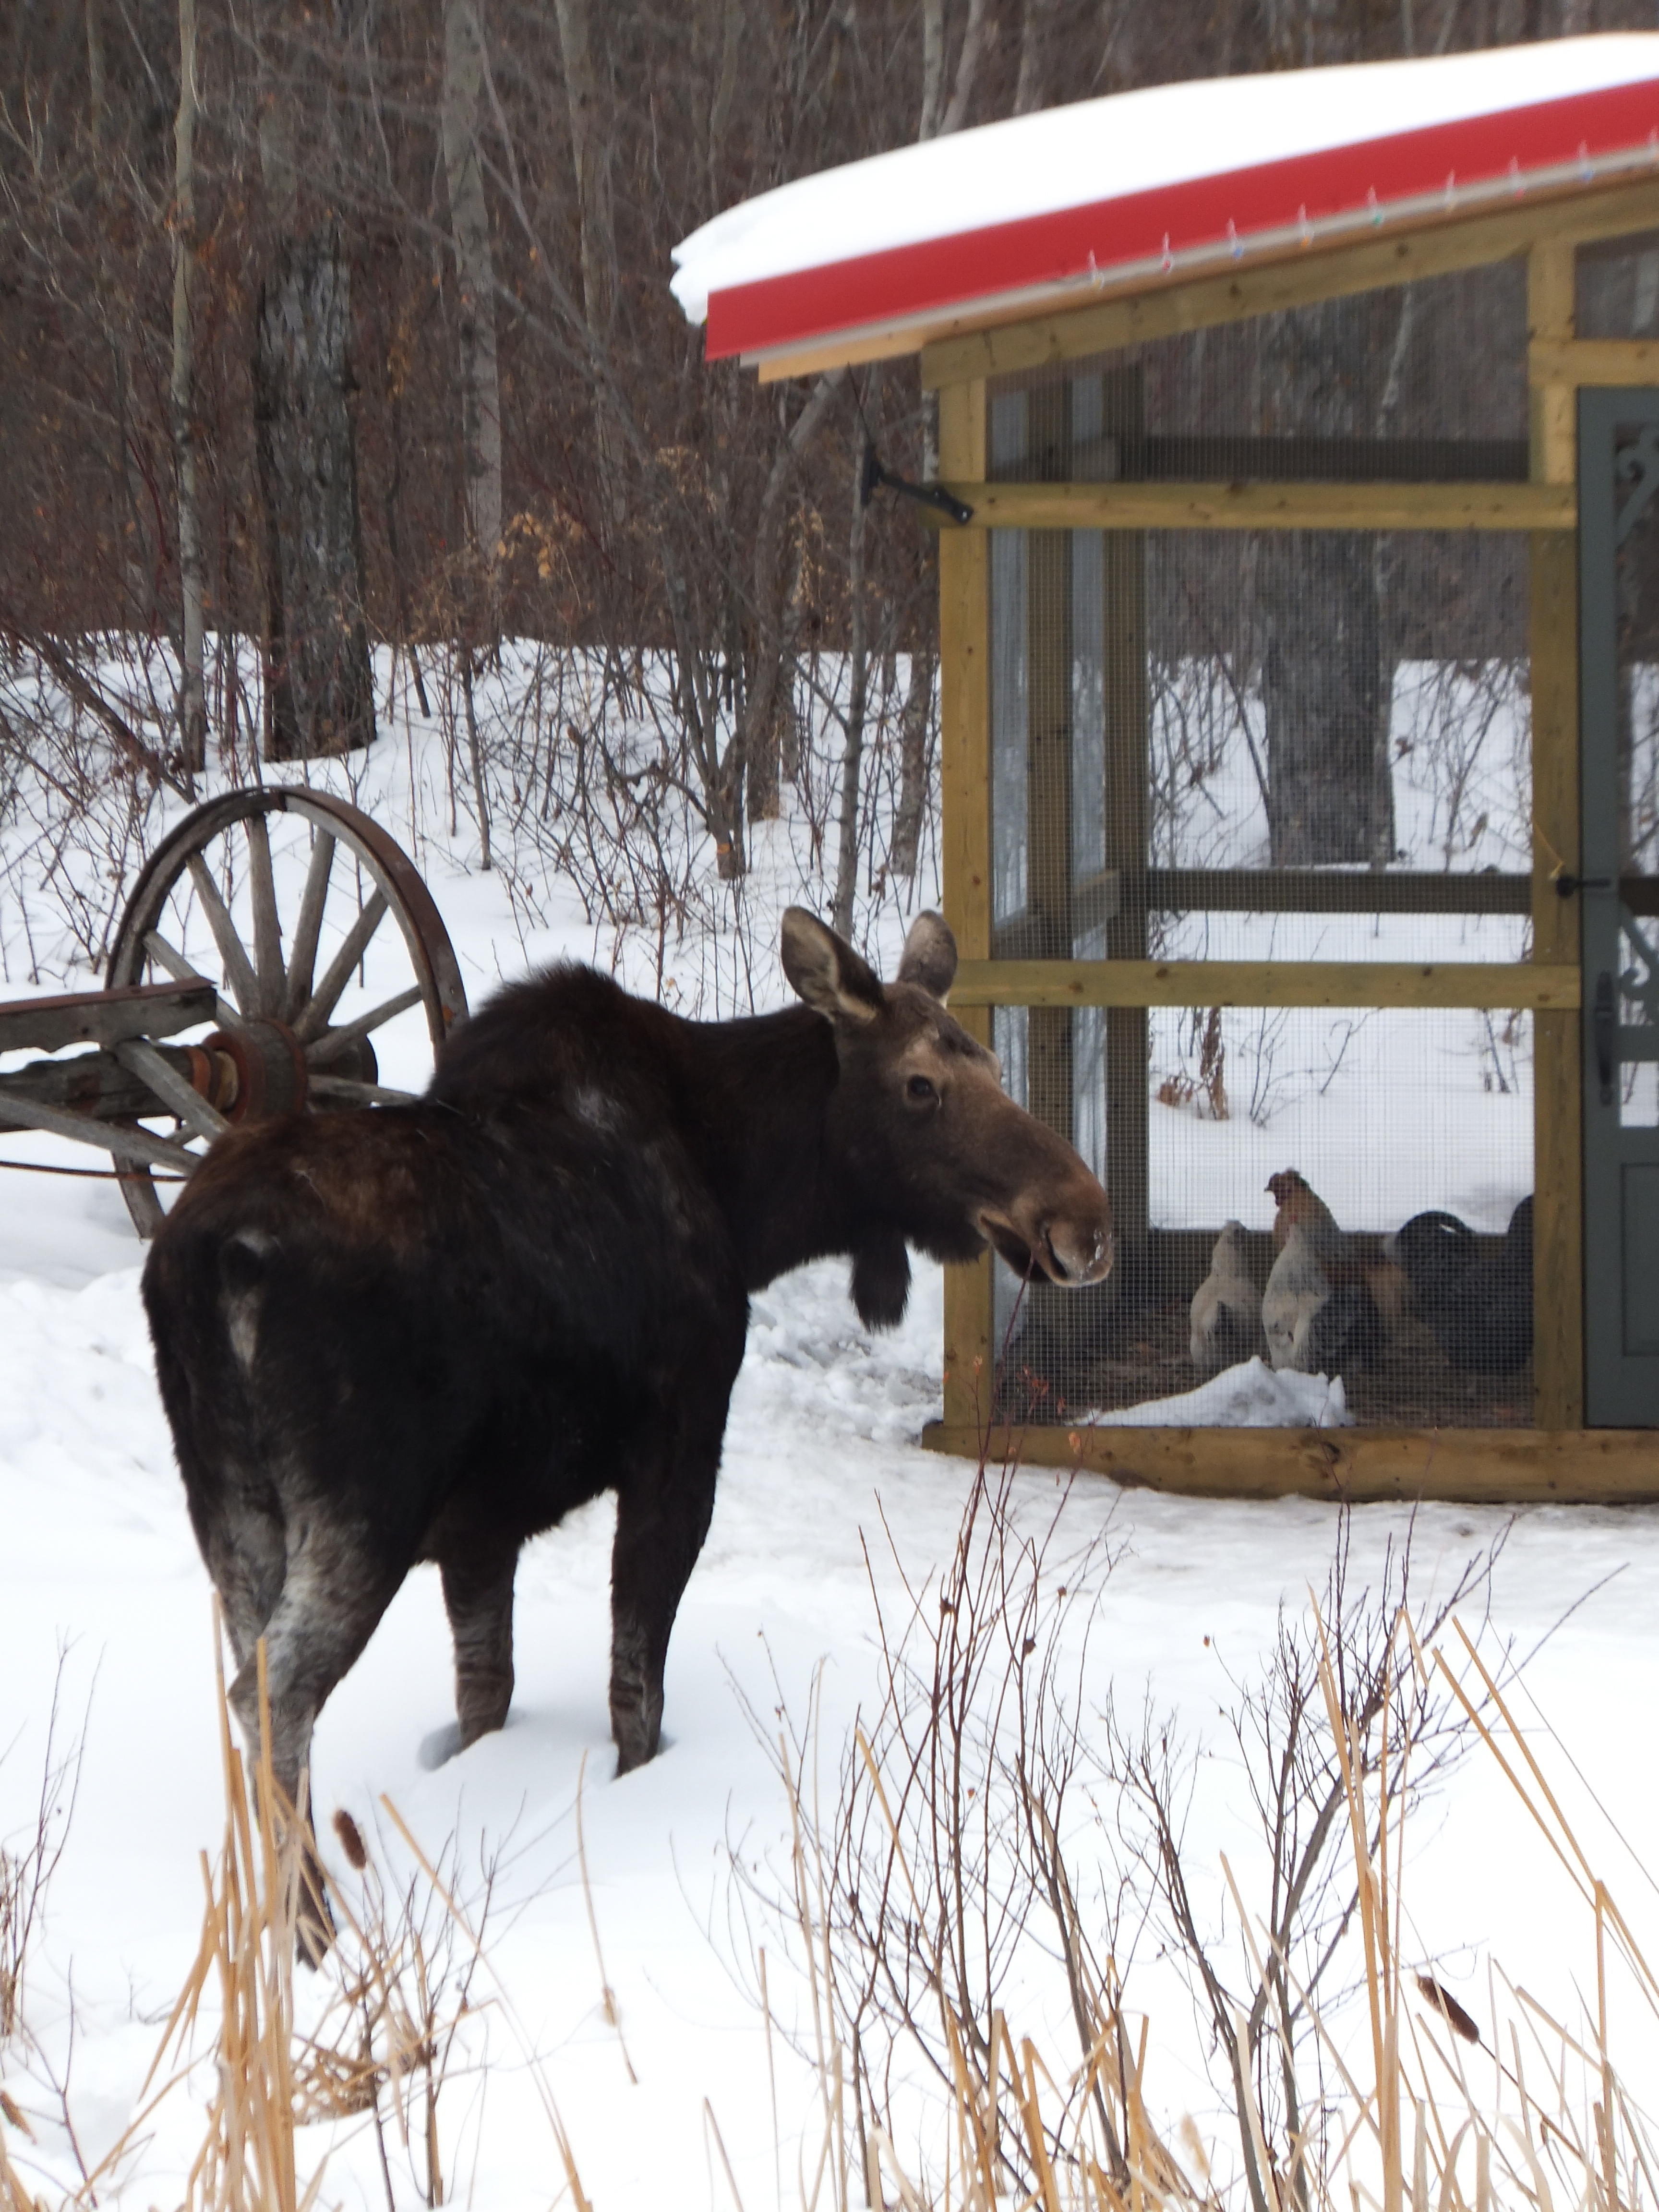 A curious moose.